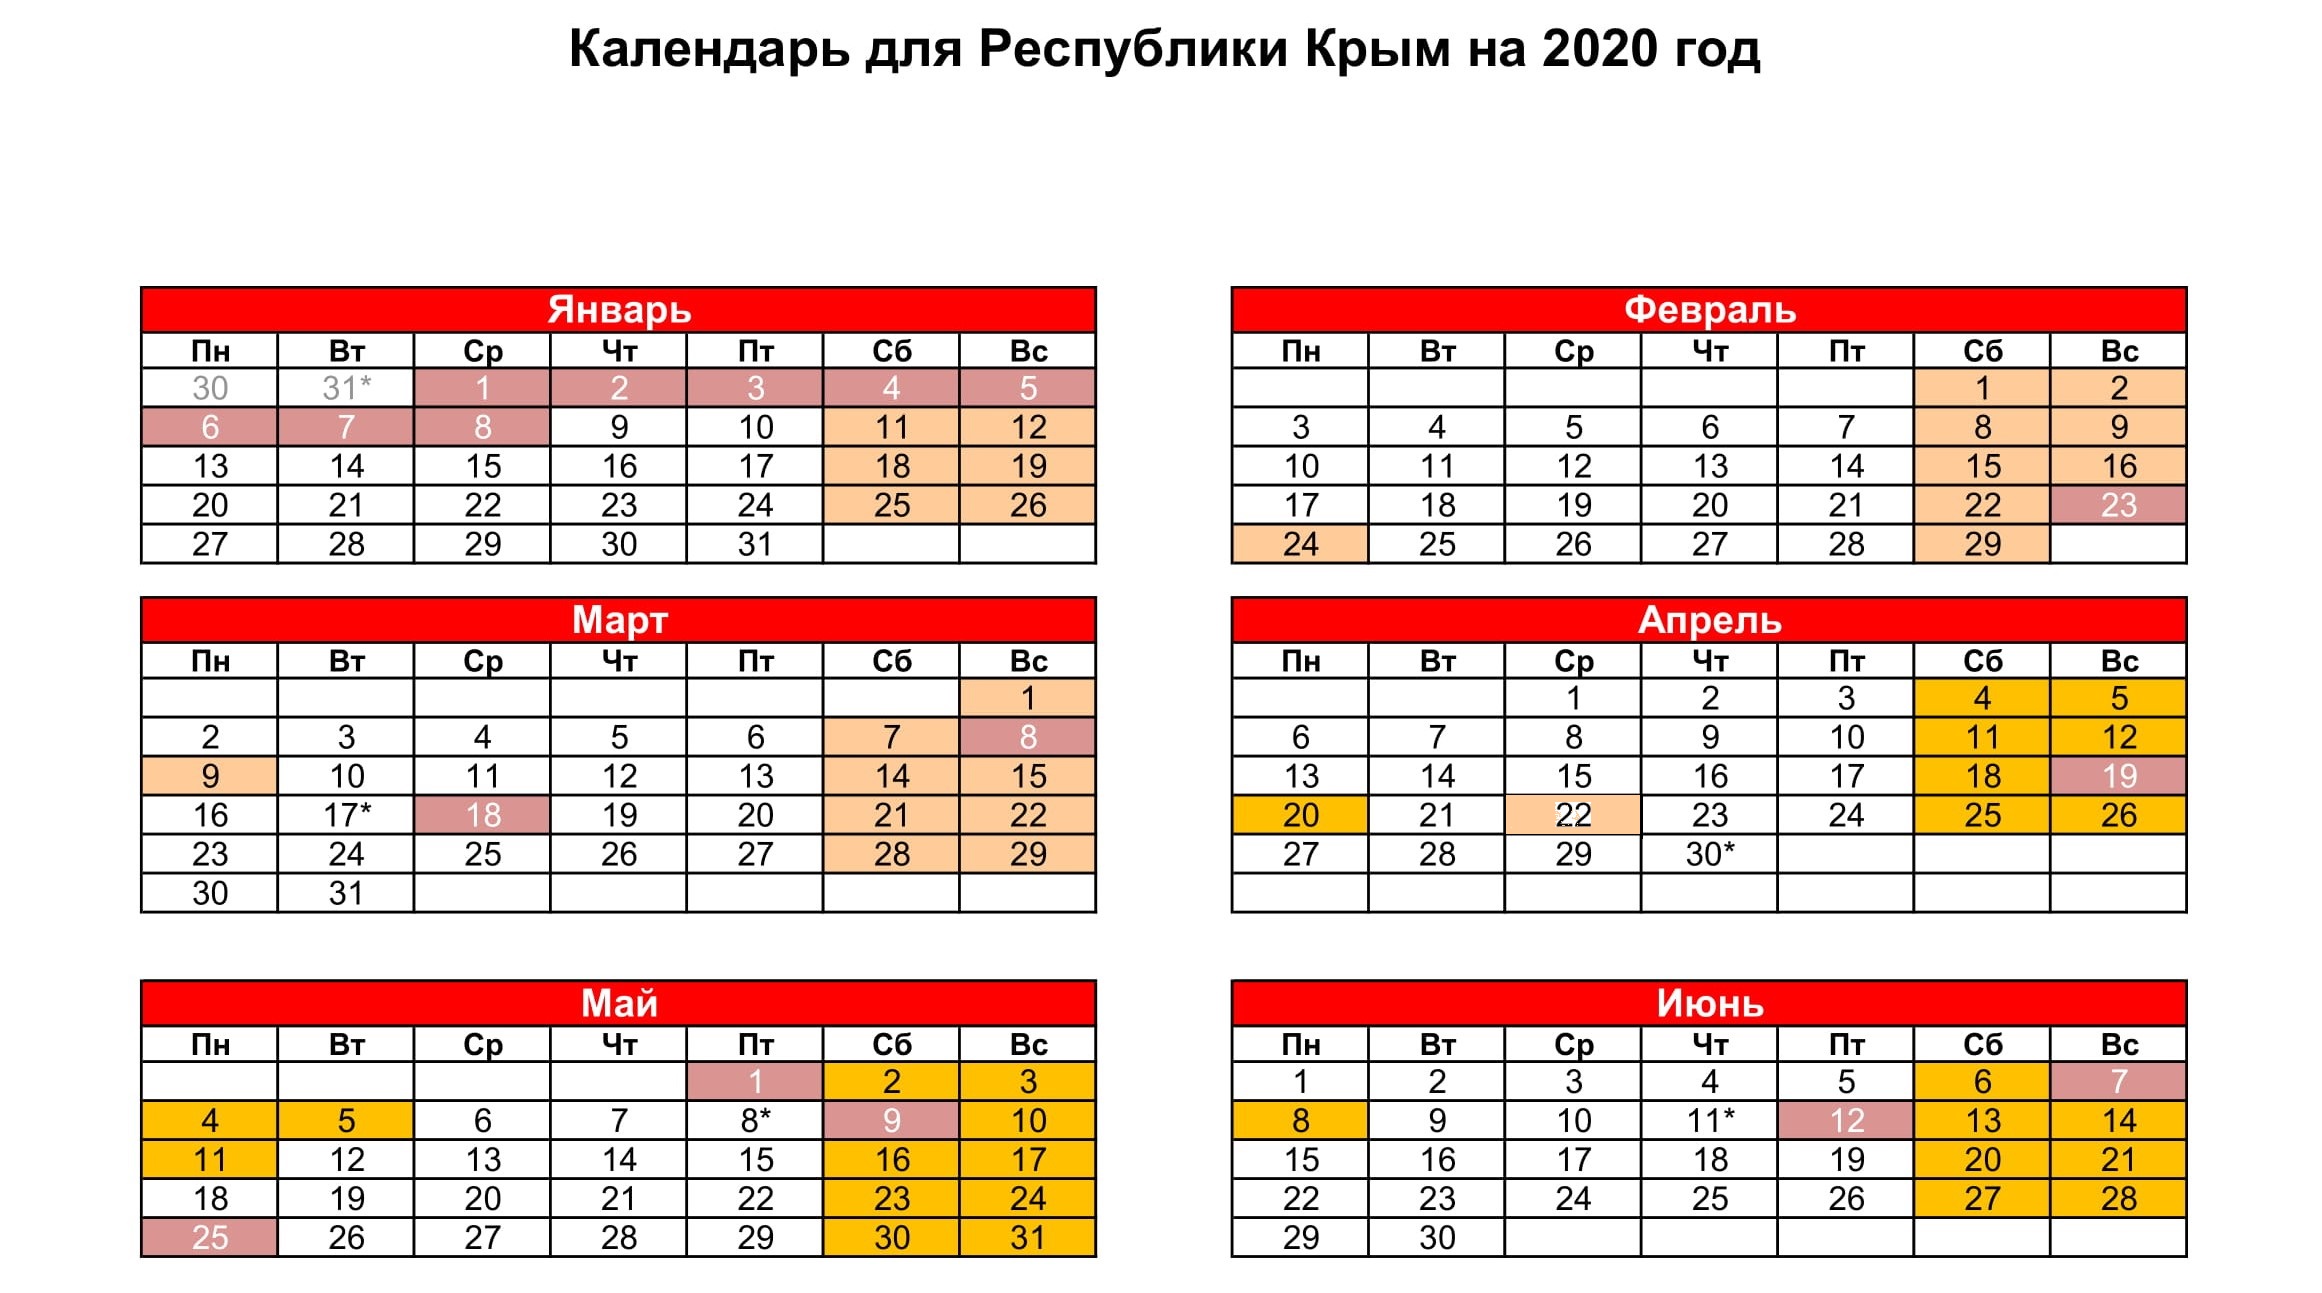 Производственный календарь для Республики Крым на 2020 год